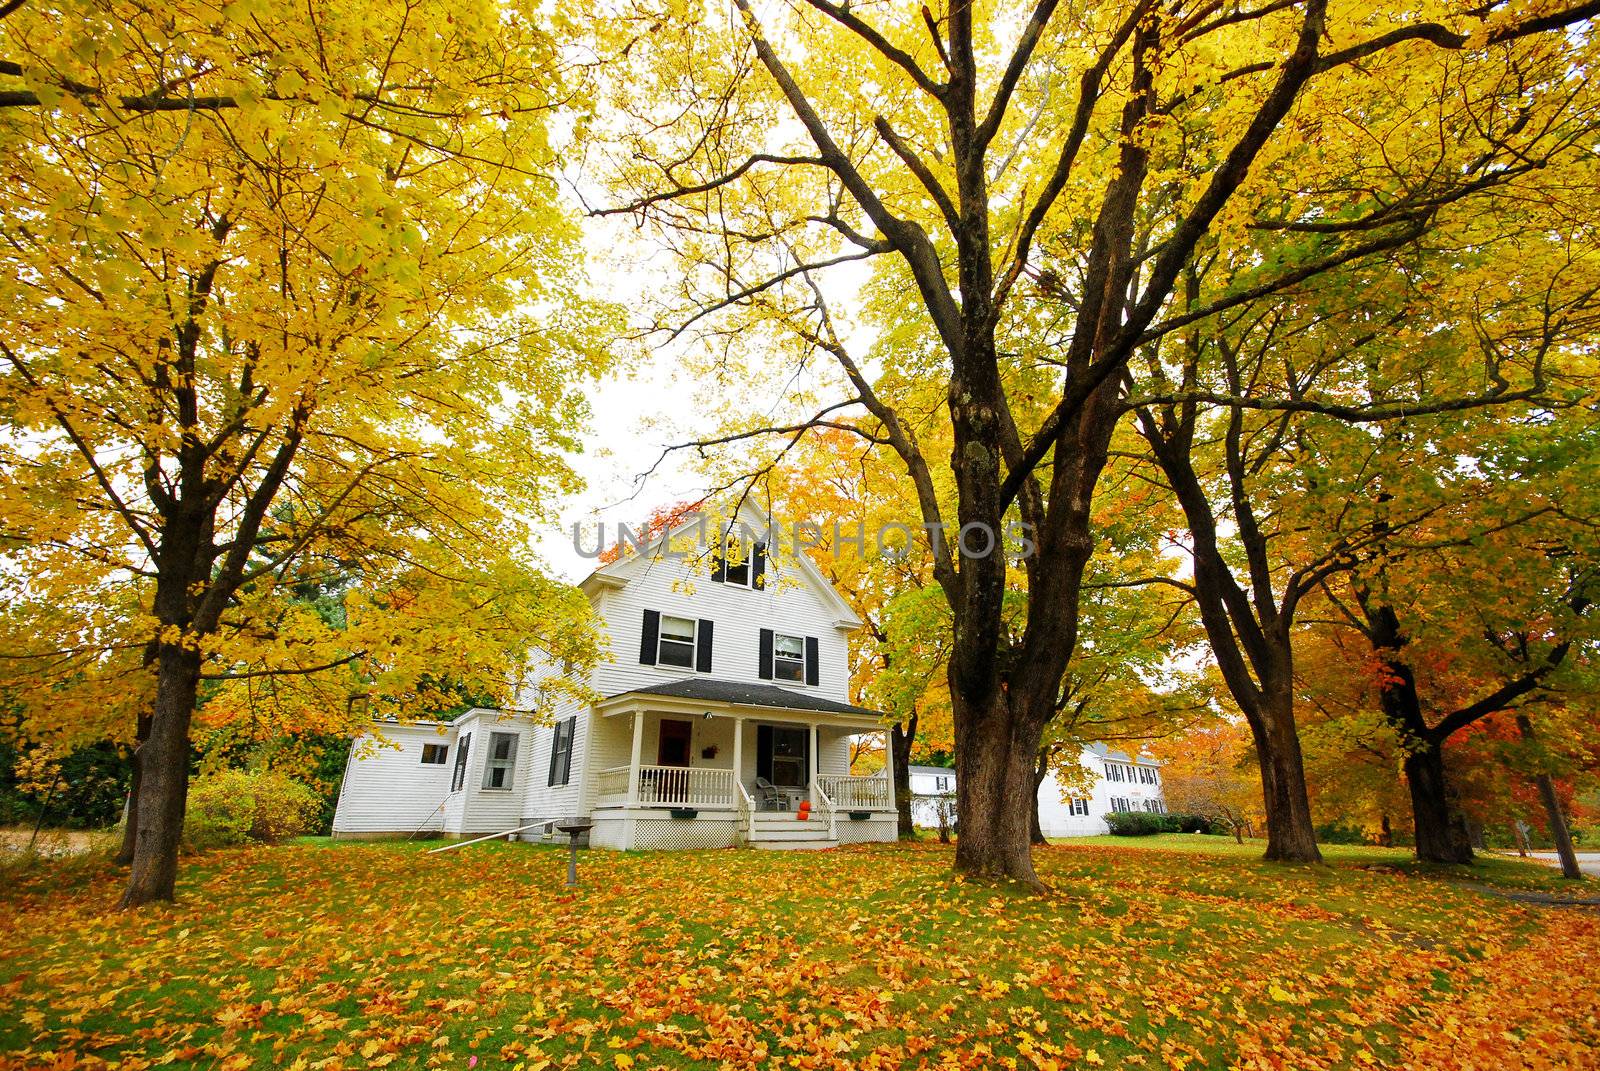 Autumn House by porbital